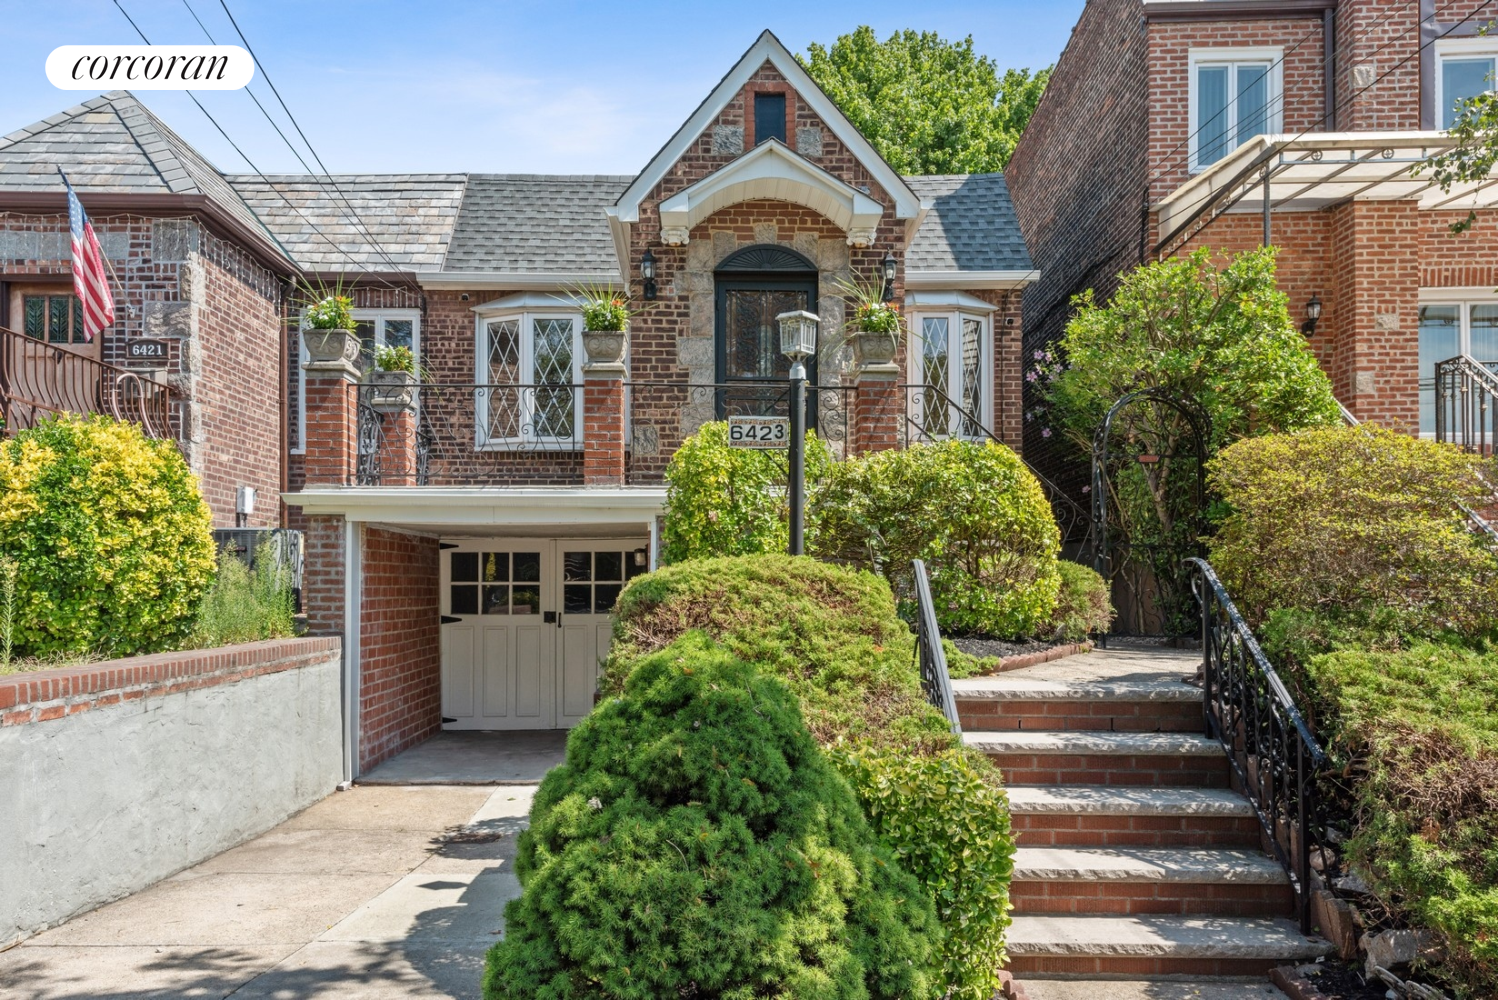 Homes for sale in Queens | View 64-23 Alderton Street